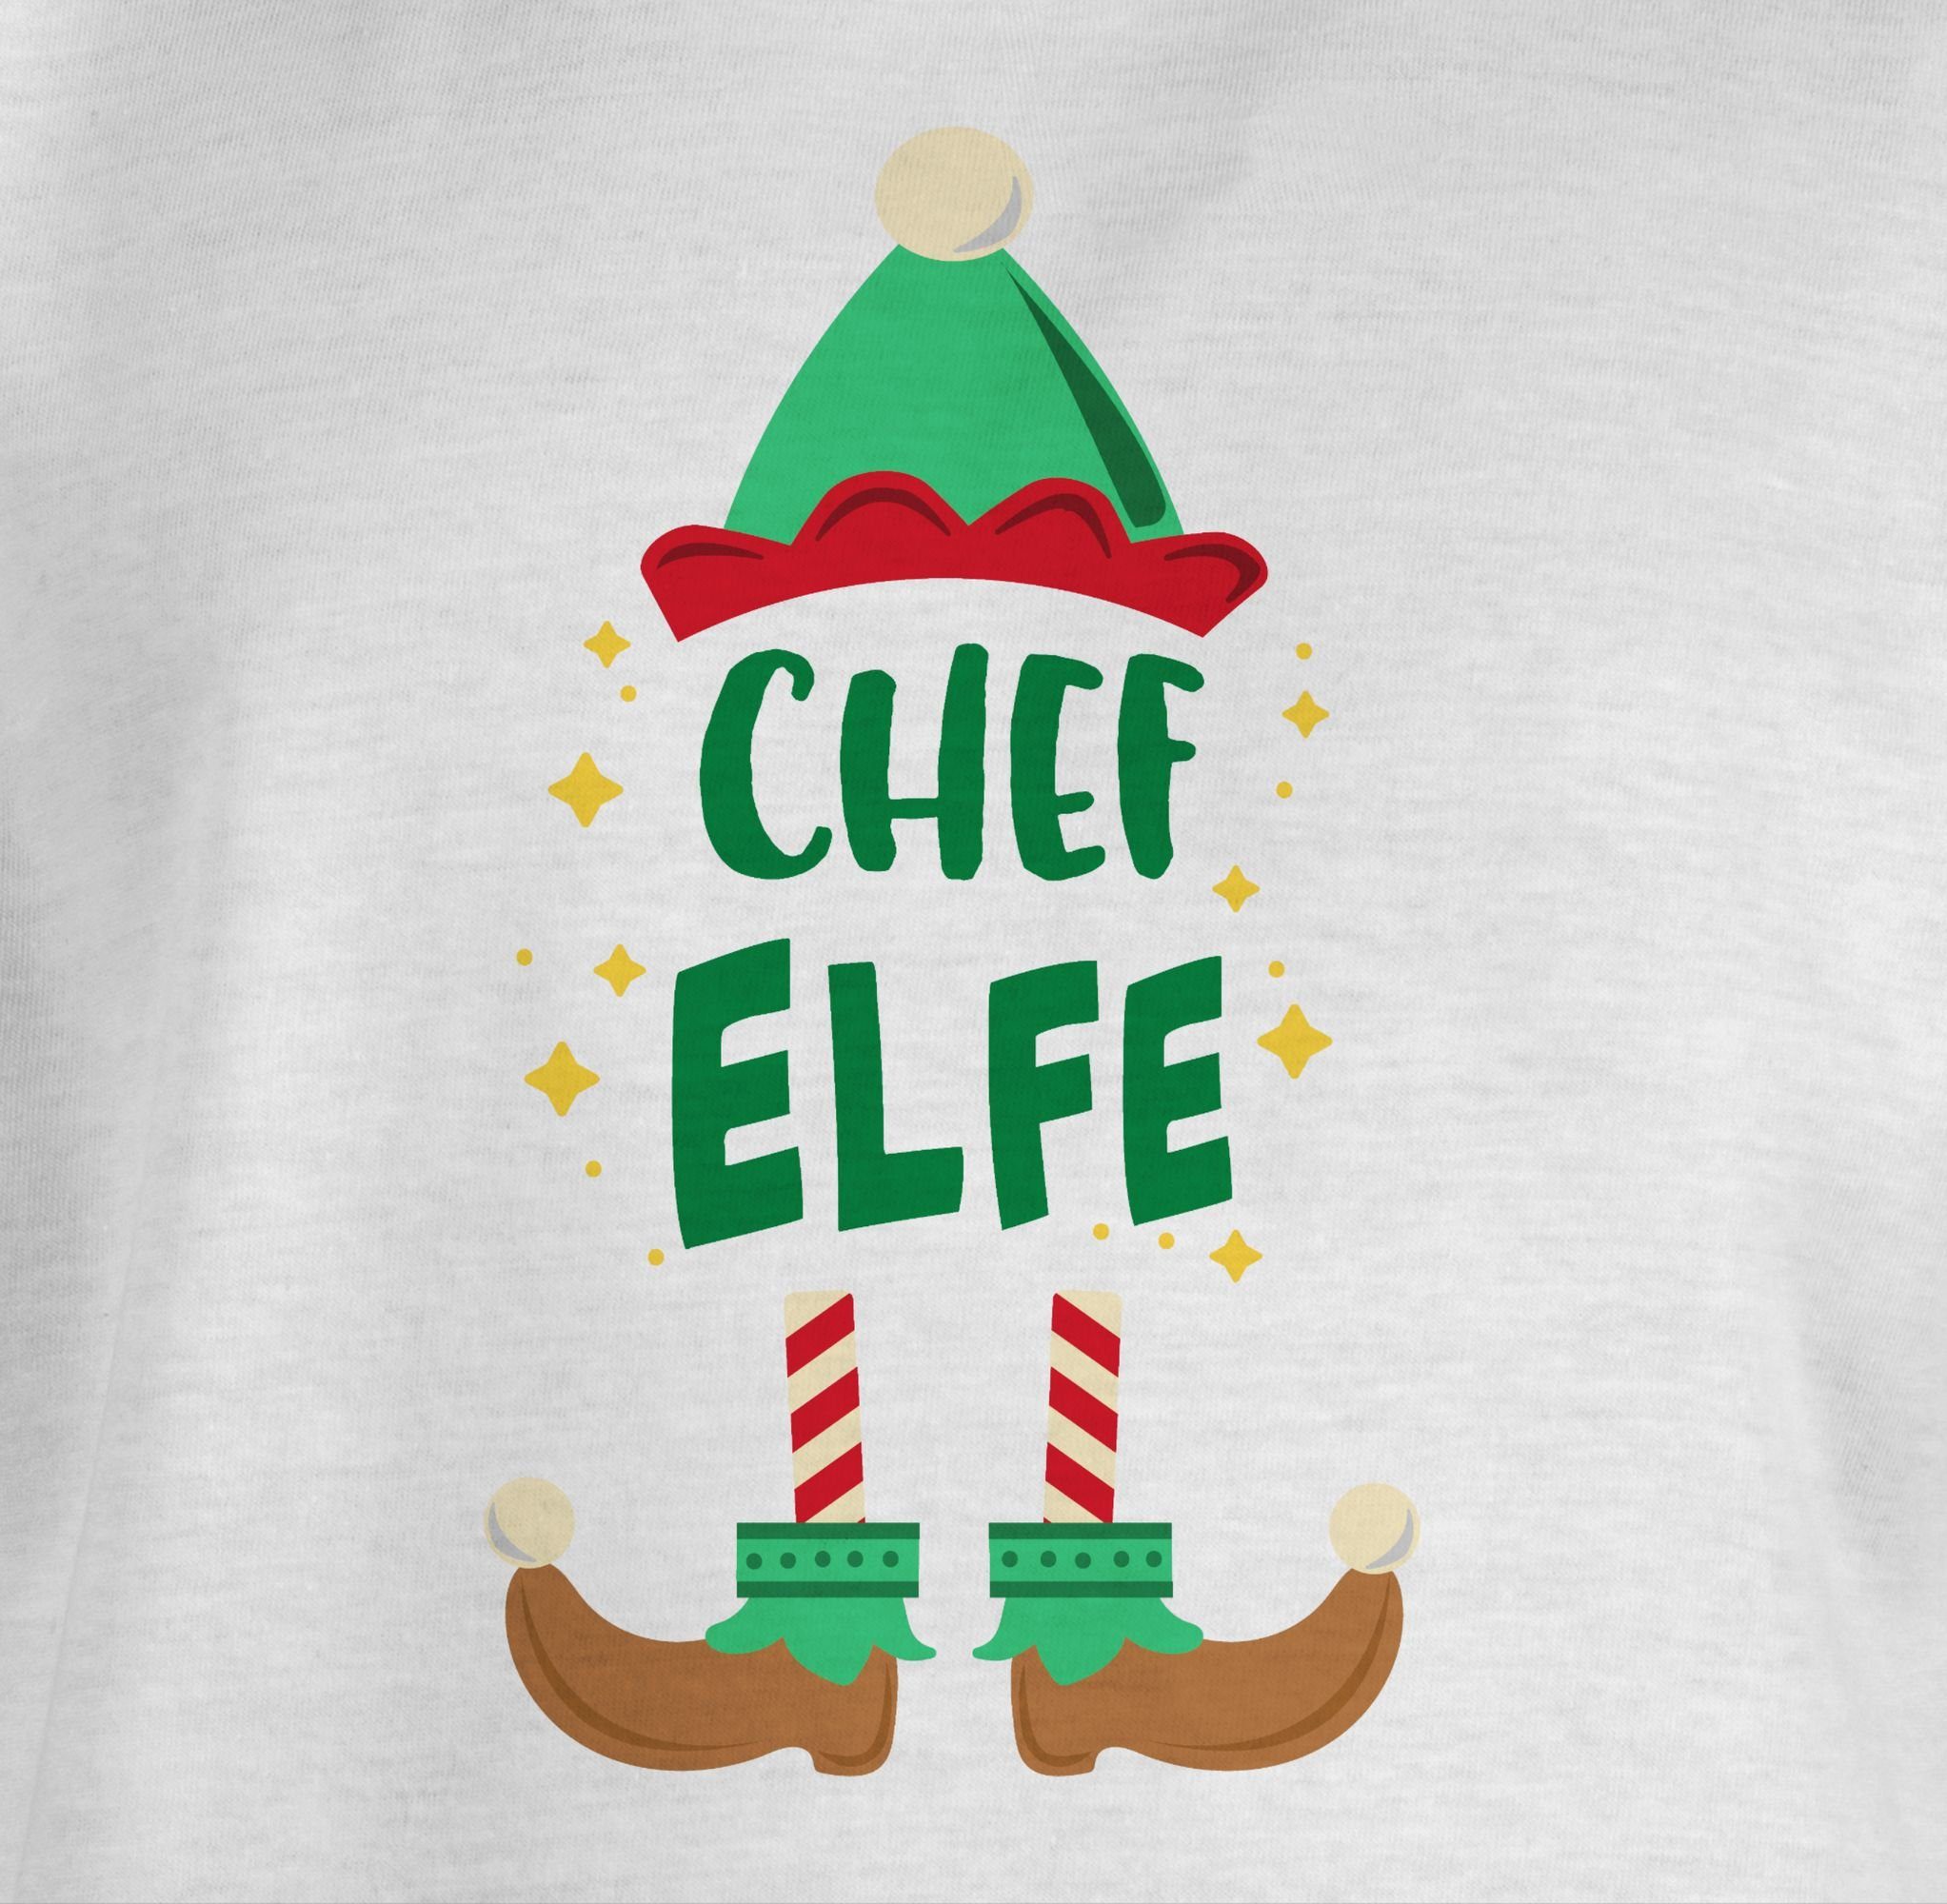 Shirtracer T-Shirt Weihnachten Chef Elfe Kleidung Weihnachten Kinder Weiß 3